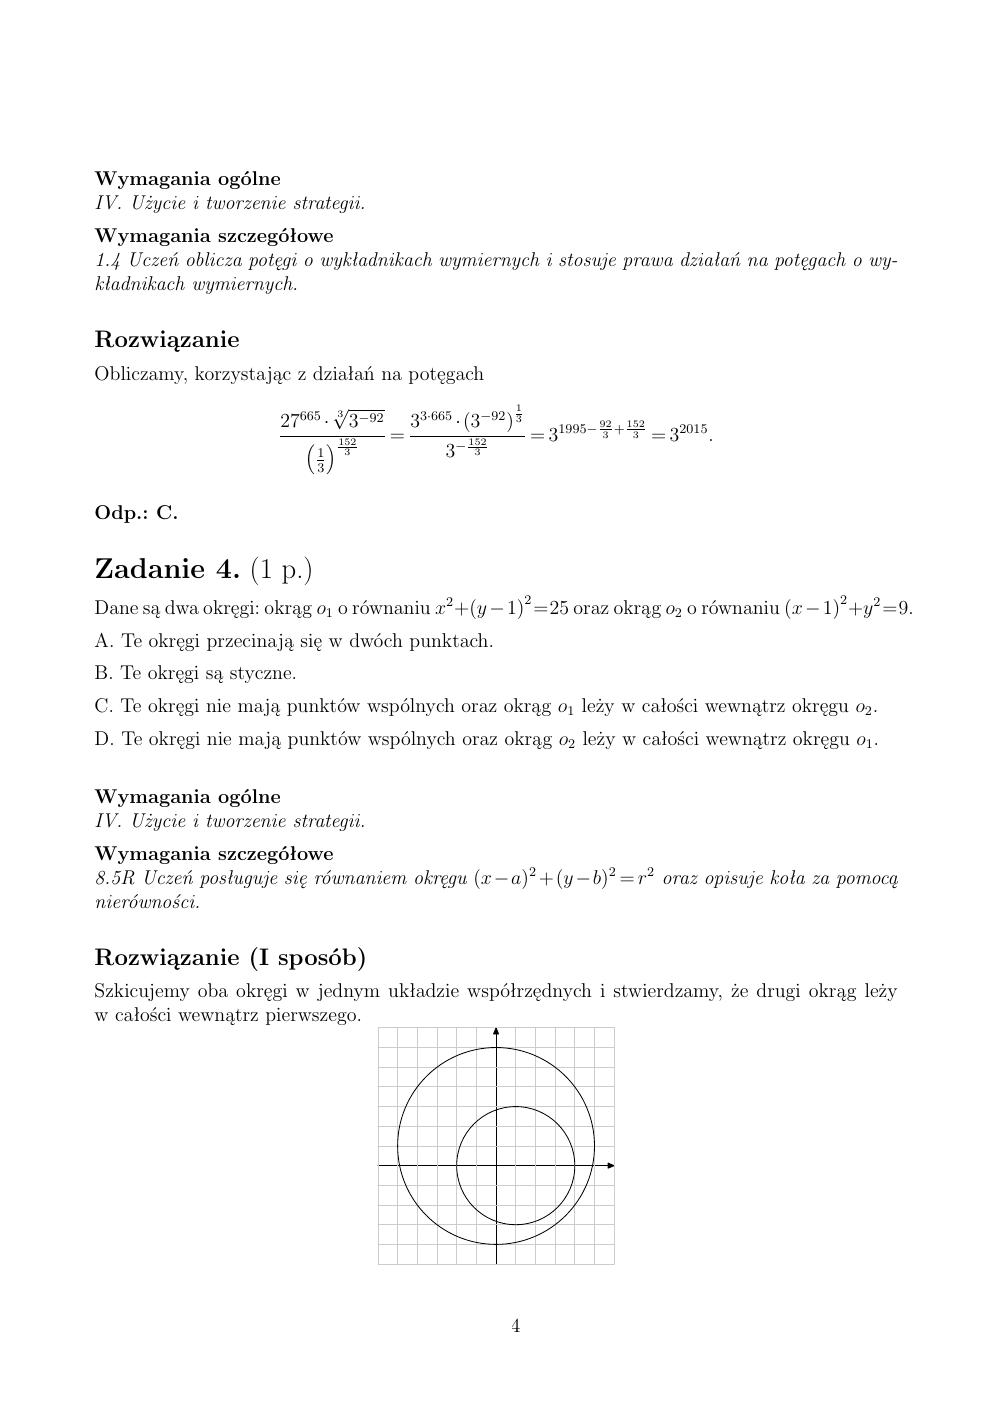 zasady oceniania - odpowiedzi - matematyka rozszerzony - matura 2015 przykładowa-04